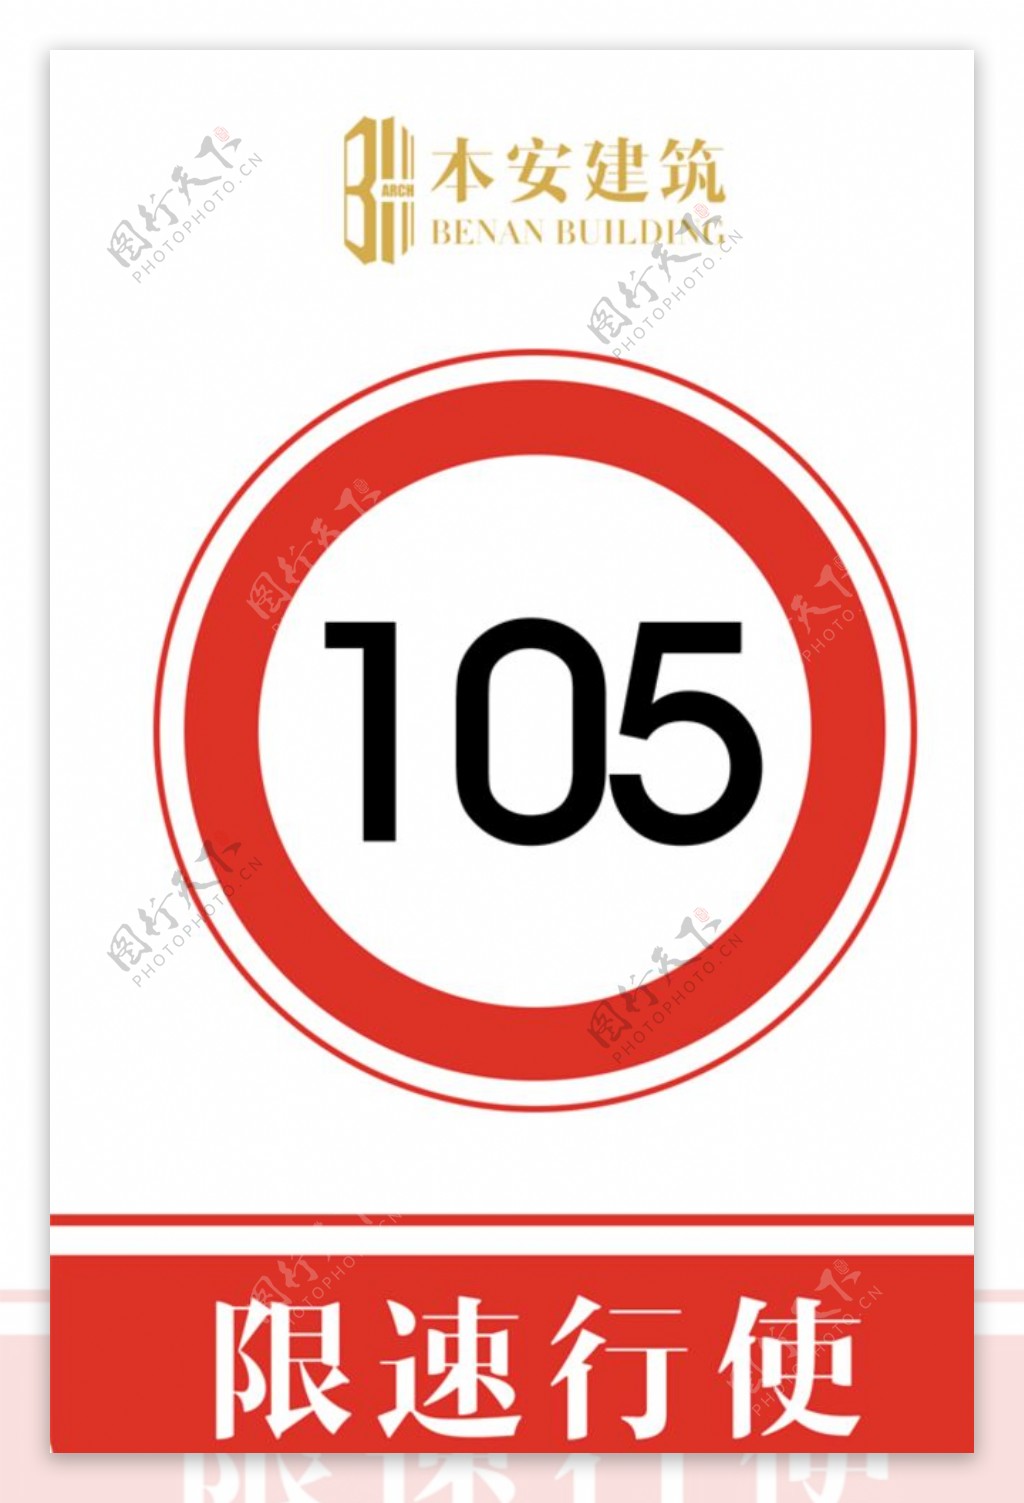 限速行使105公里交通安全标识